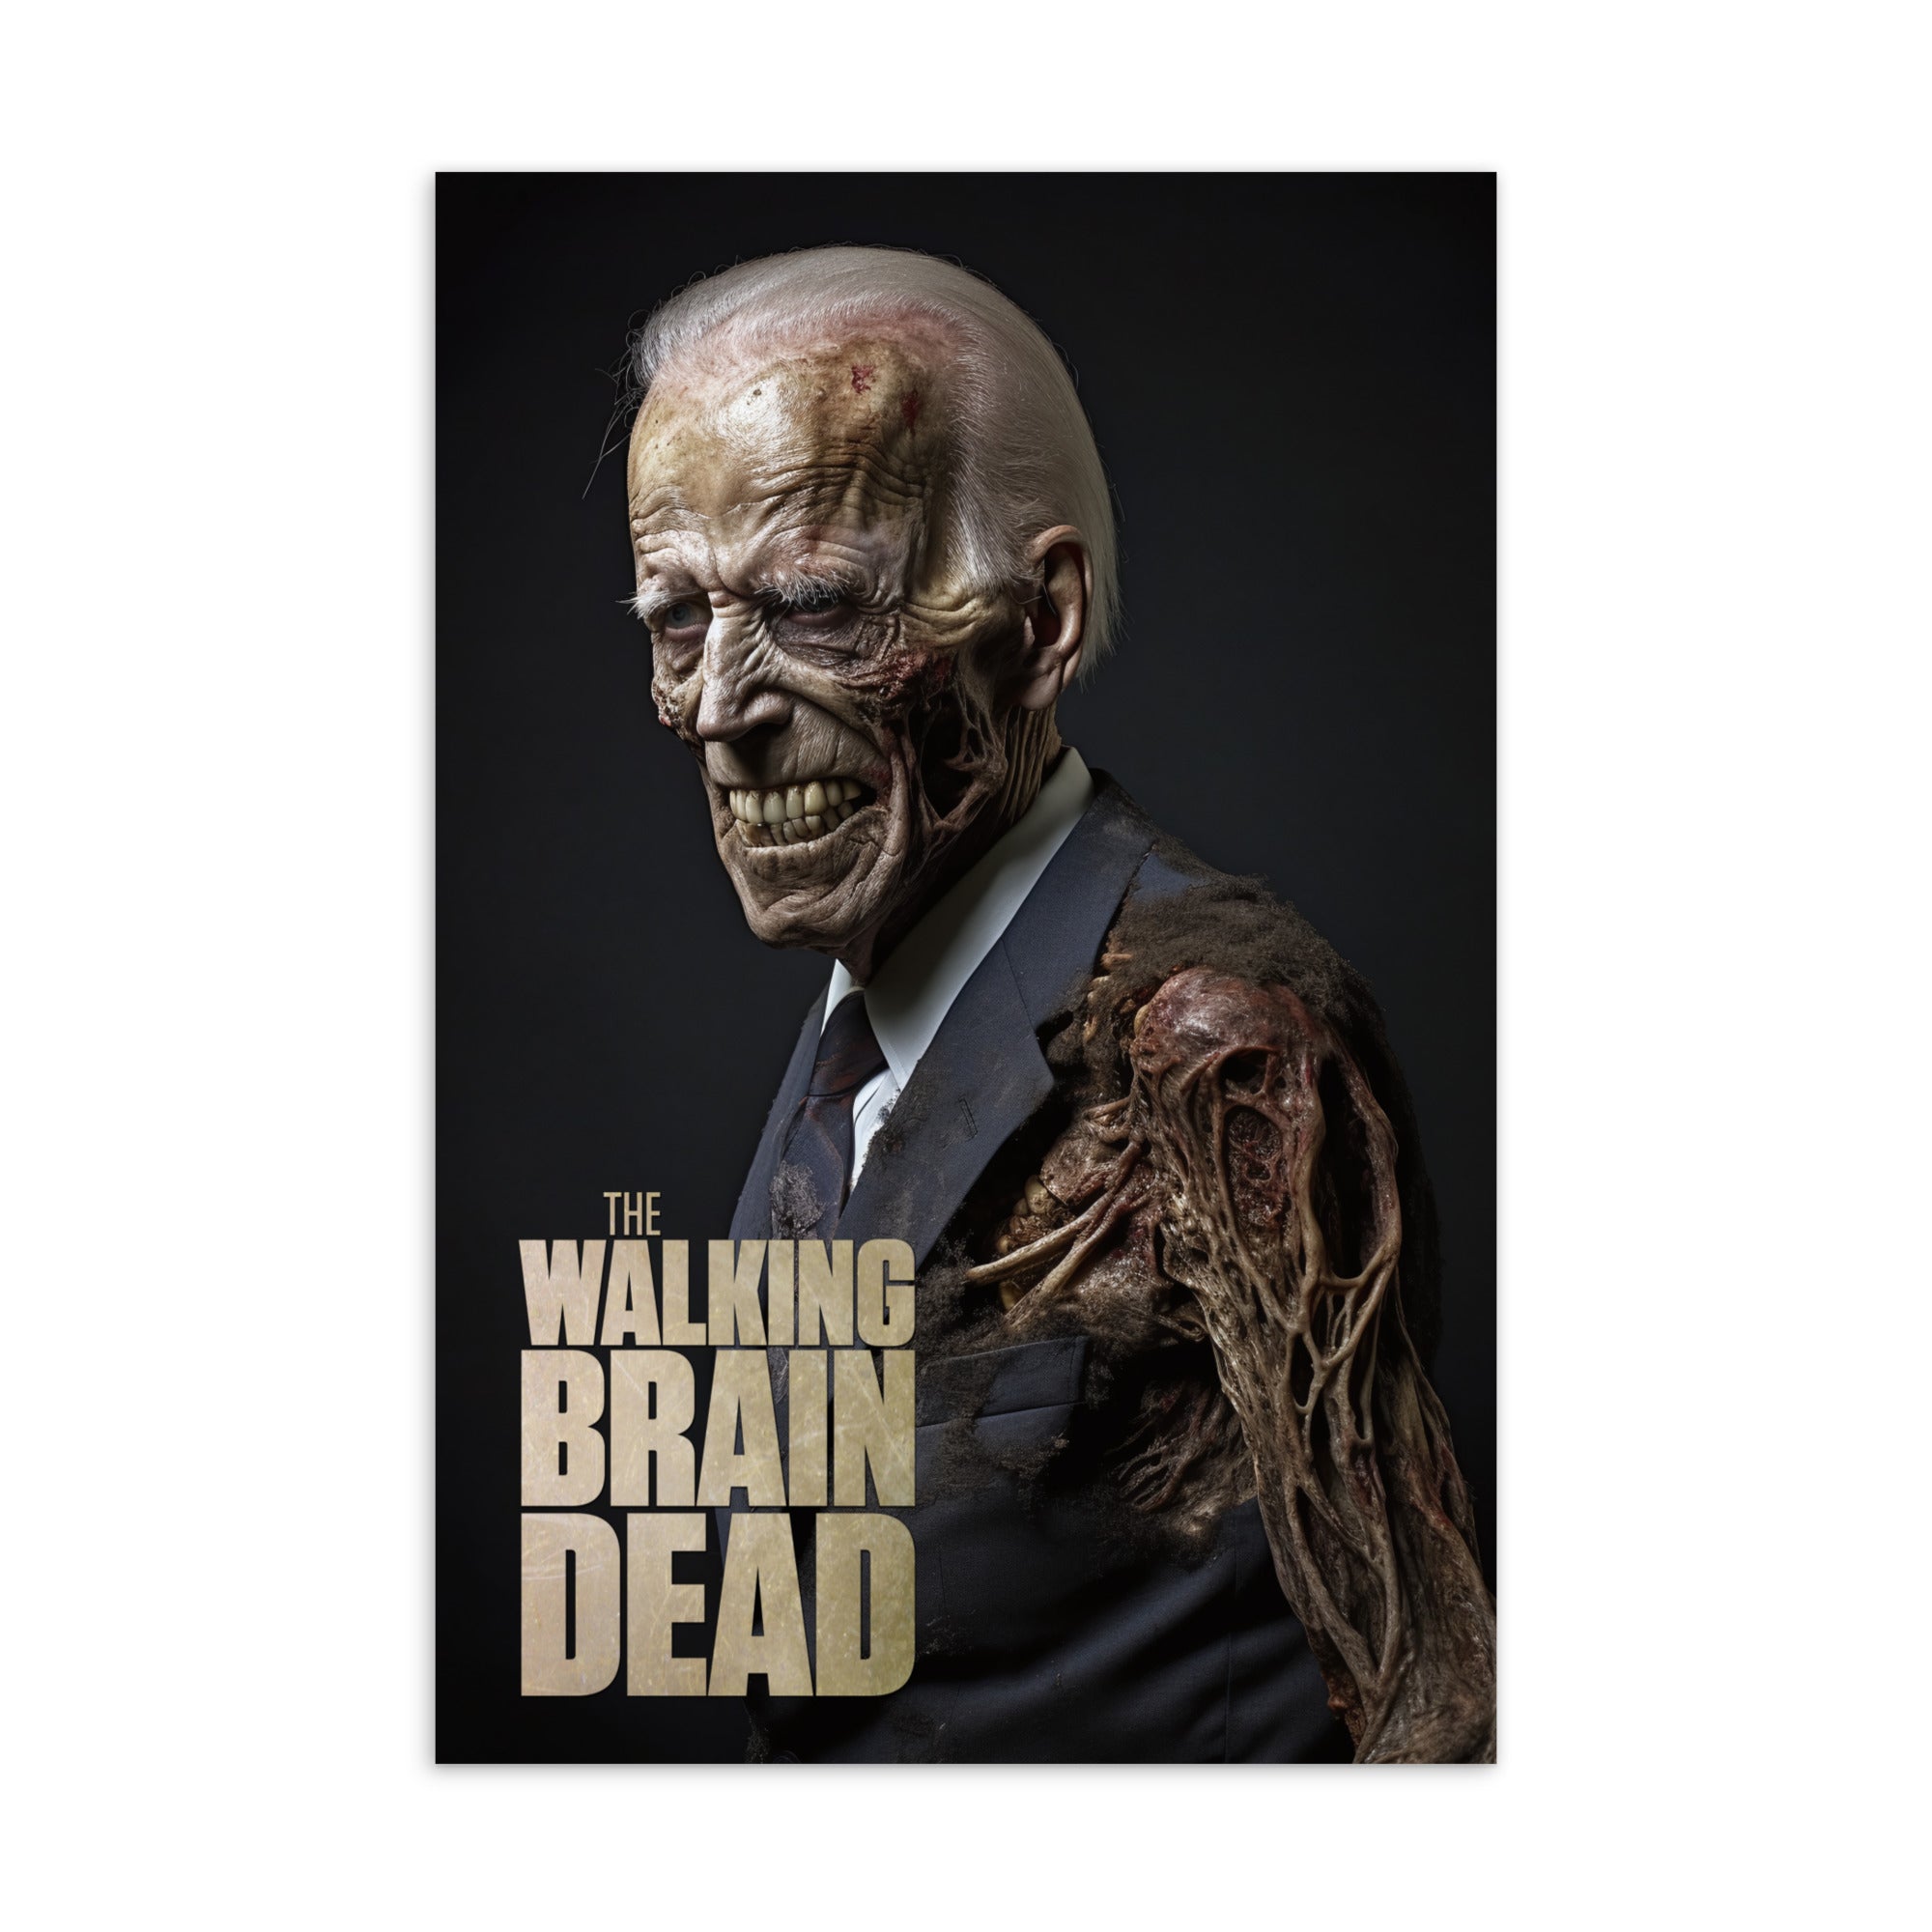 The Walking Brain Dead Postcard